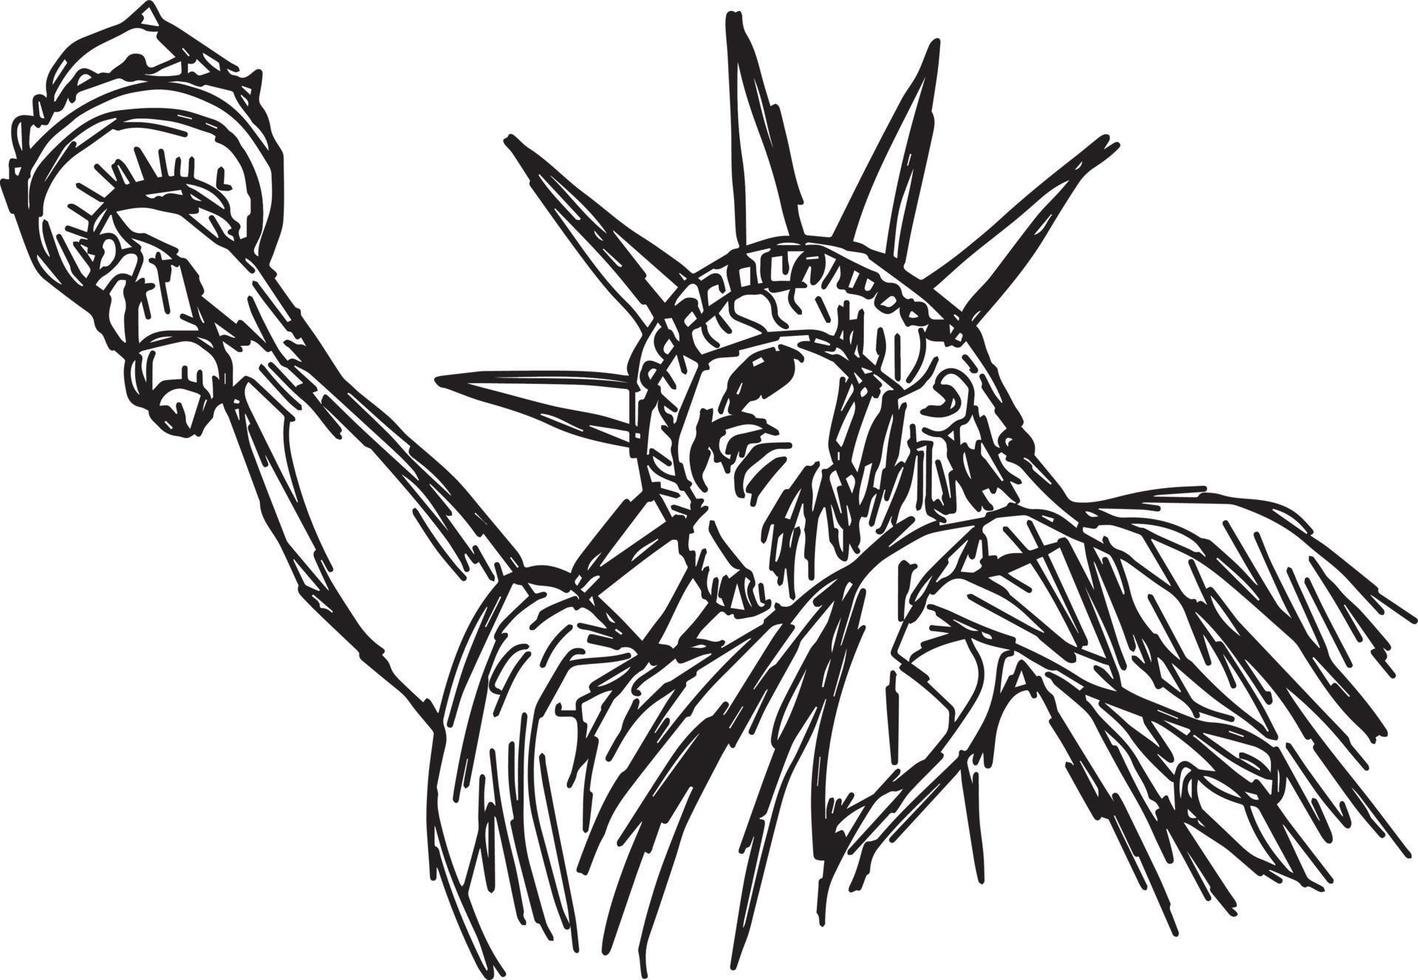 estatua de la libertad - ilustración vectorial boceto dibujado a mano vector